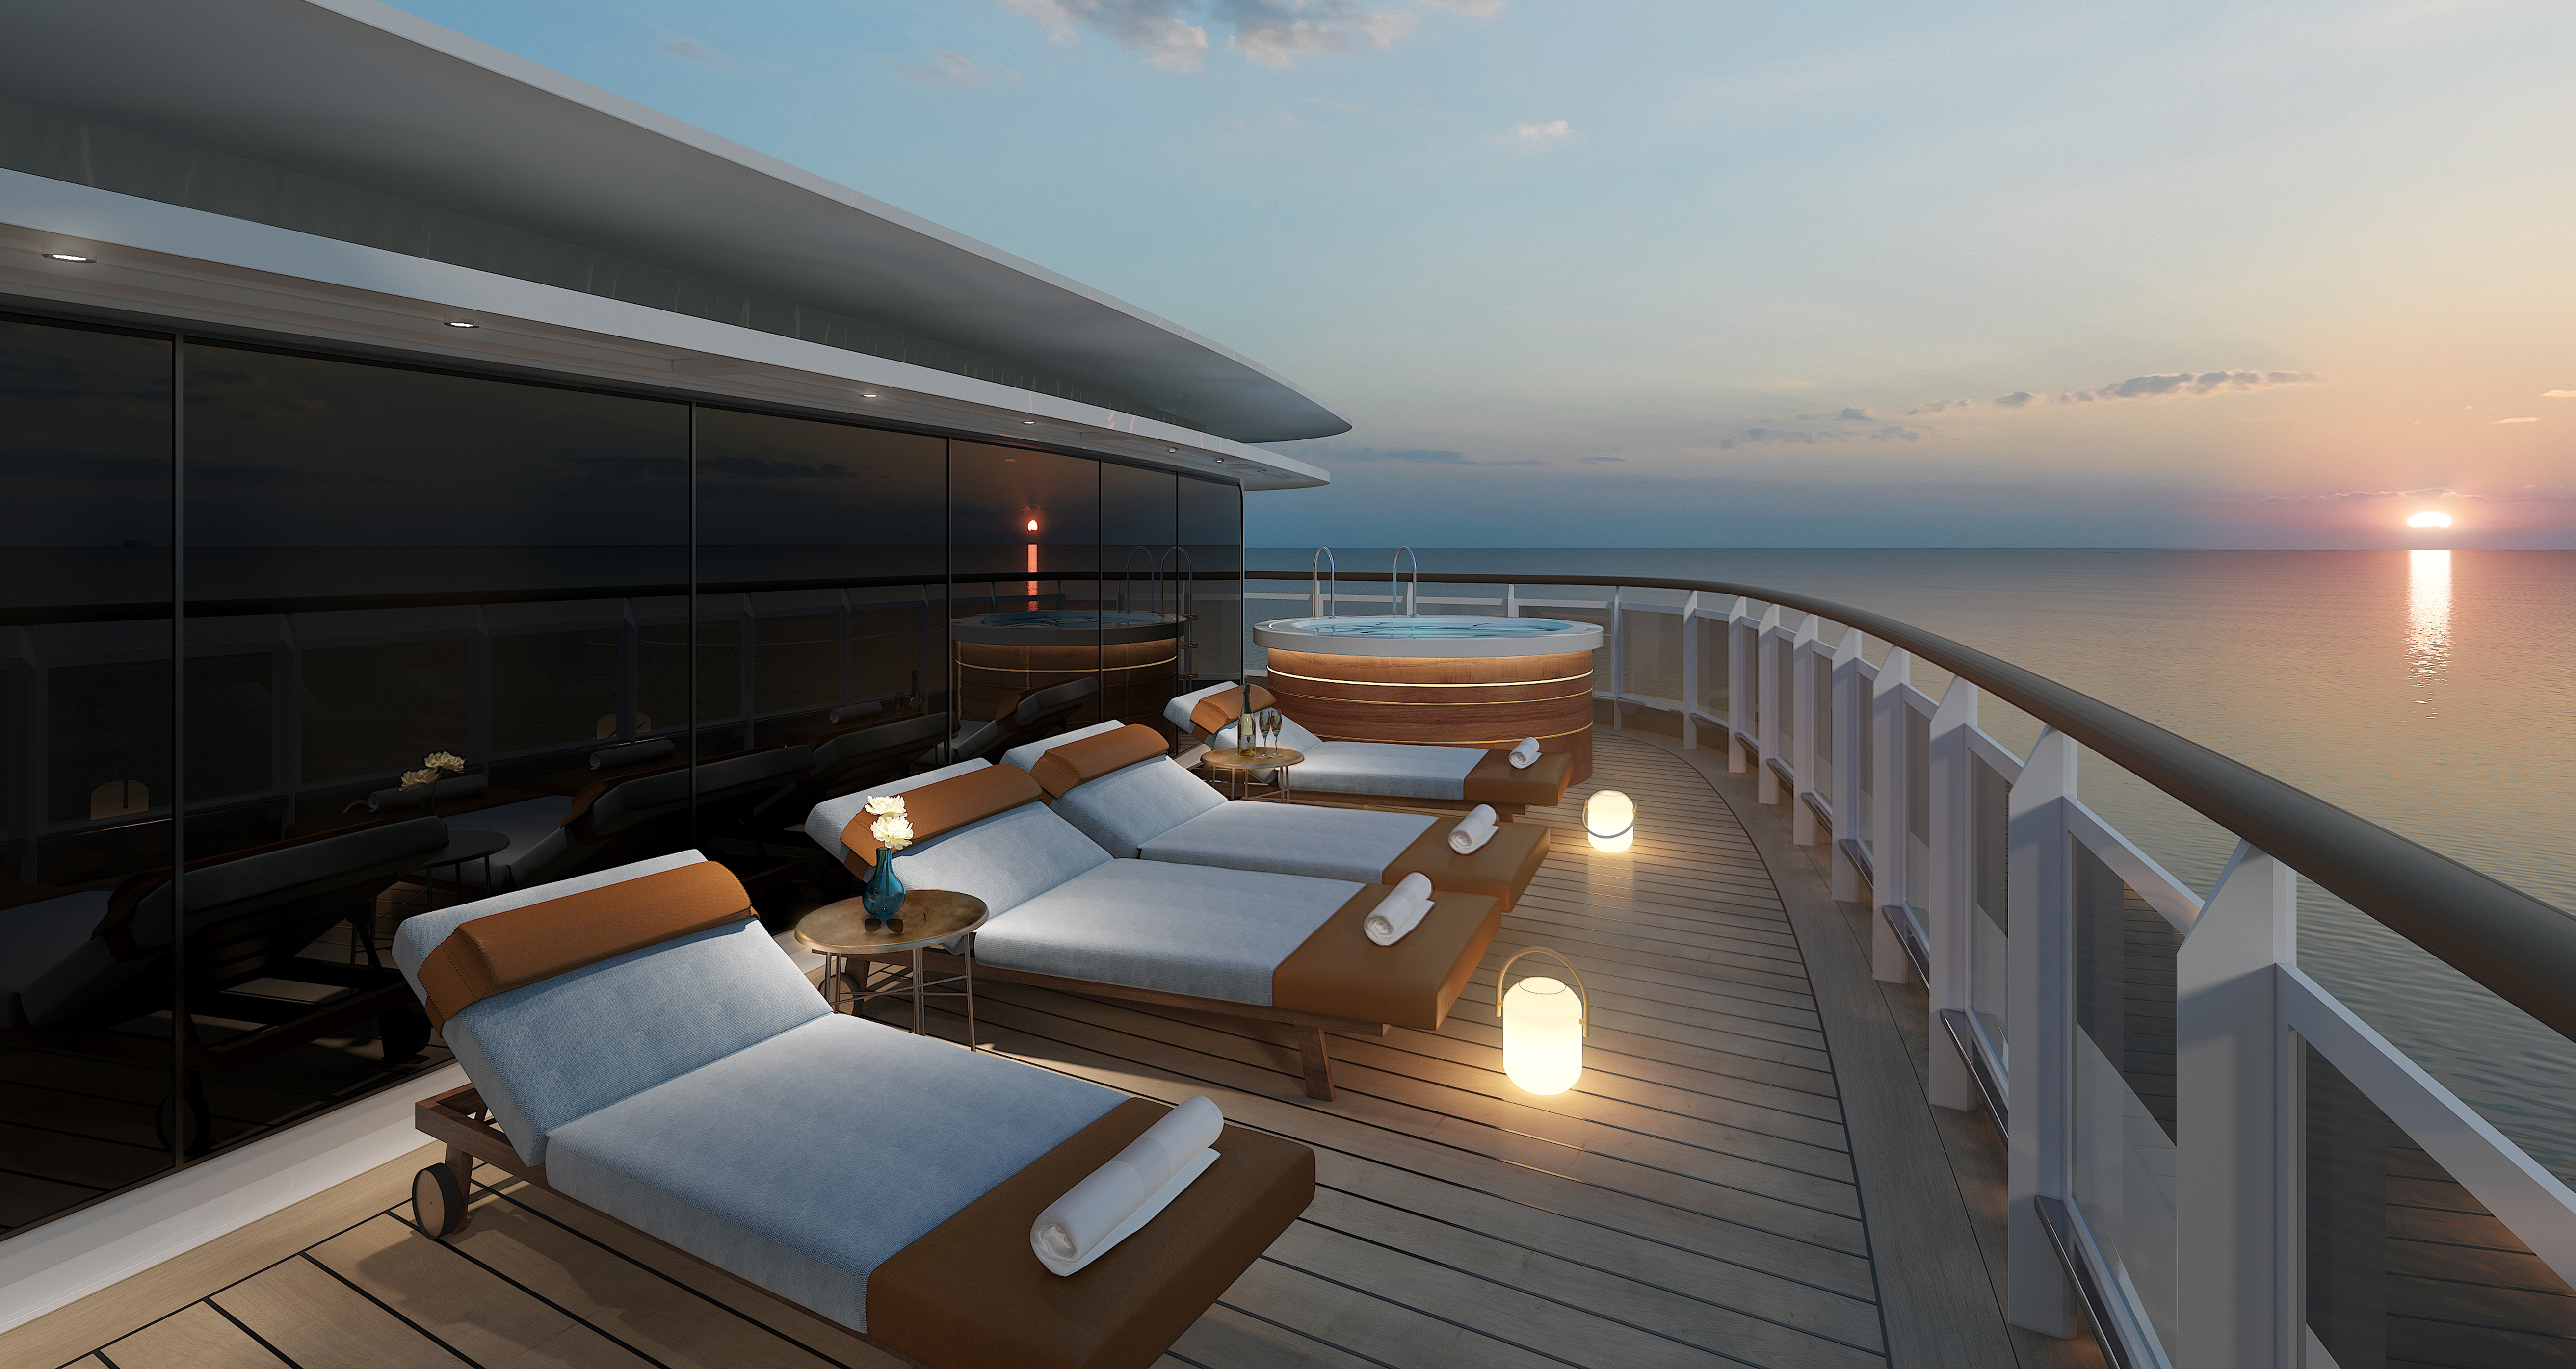 Eine der luxuriösesten Suiten der sieben Weltmeere wird sich auf Deck 14 der Seven Seas Splendor befinden, über der Brücke, mit 413 m²